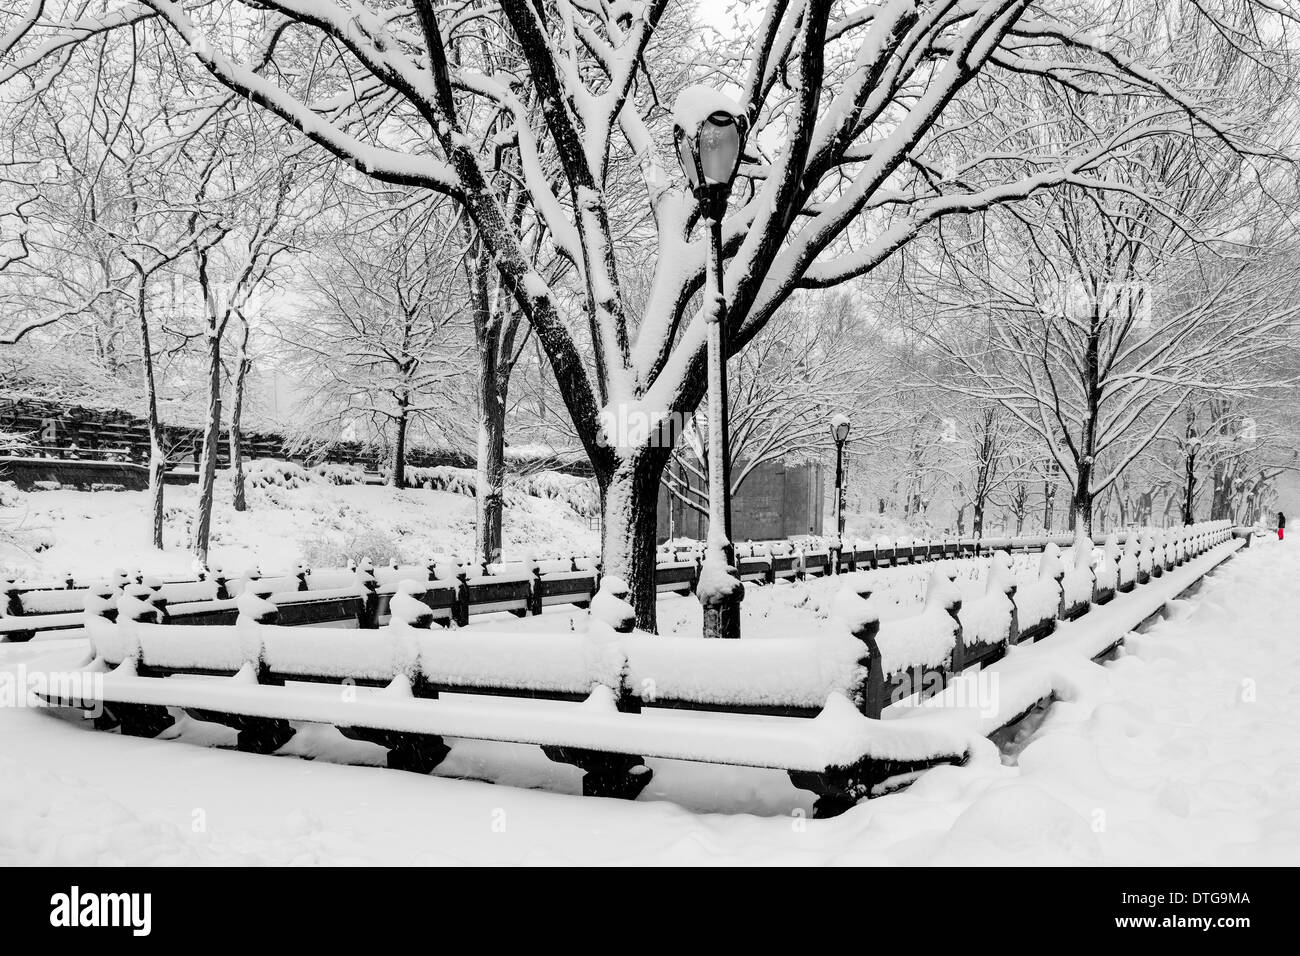 Central Park Mall wird ein Winter-Wunderland während eines Schneesturms in New York City. Stockfoto